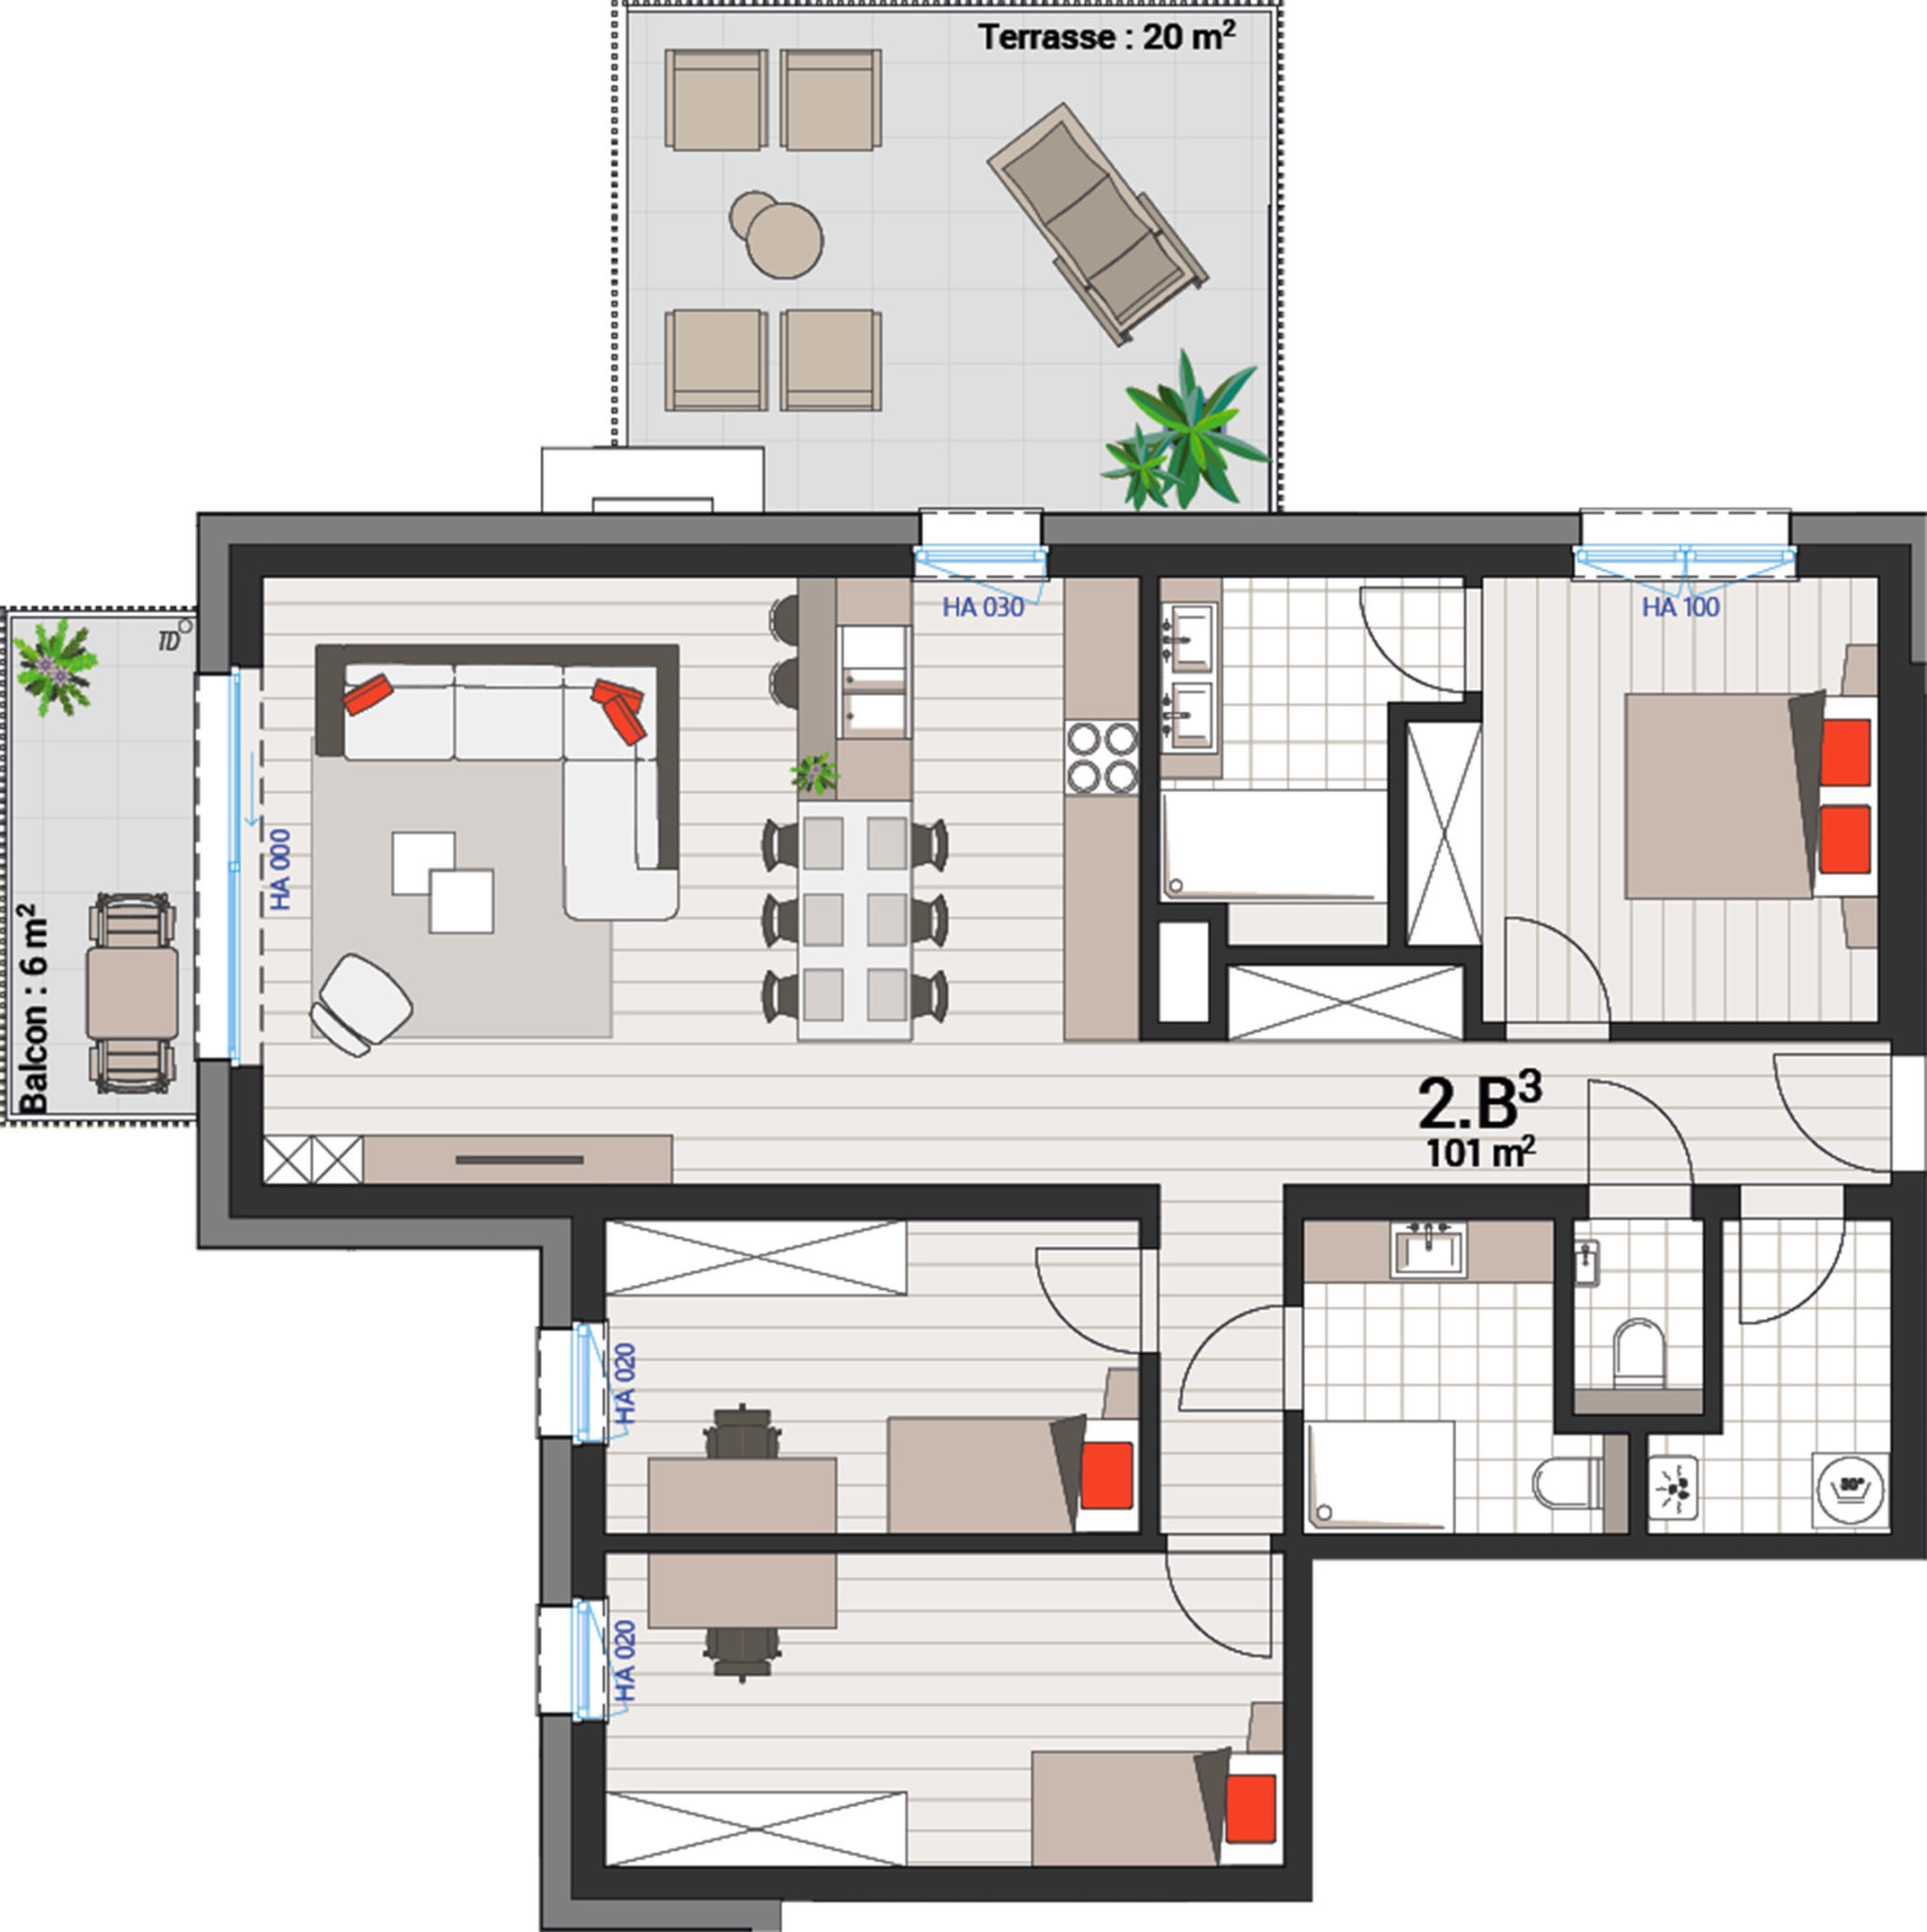 Appartement 2B